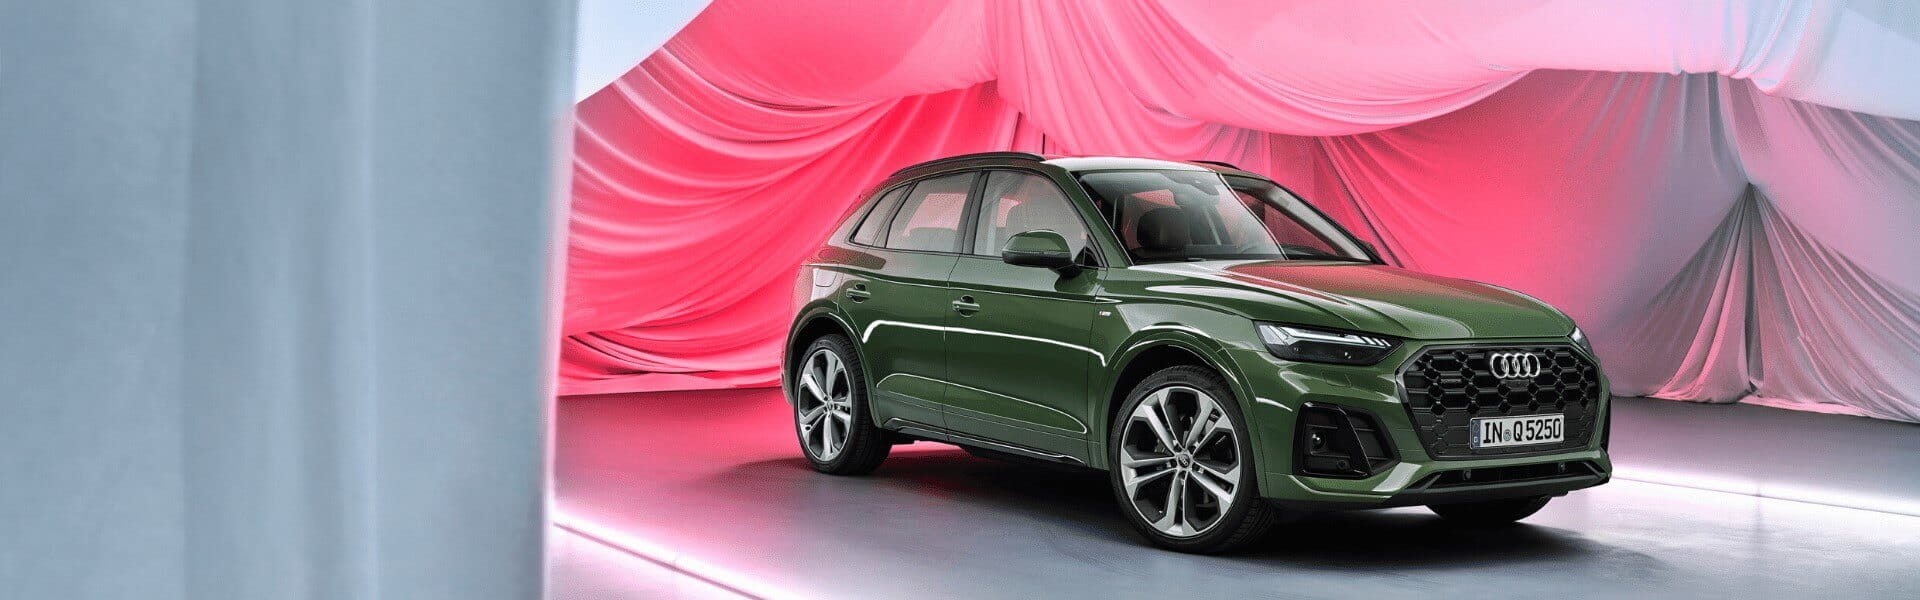 Audi zakelijk leasen